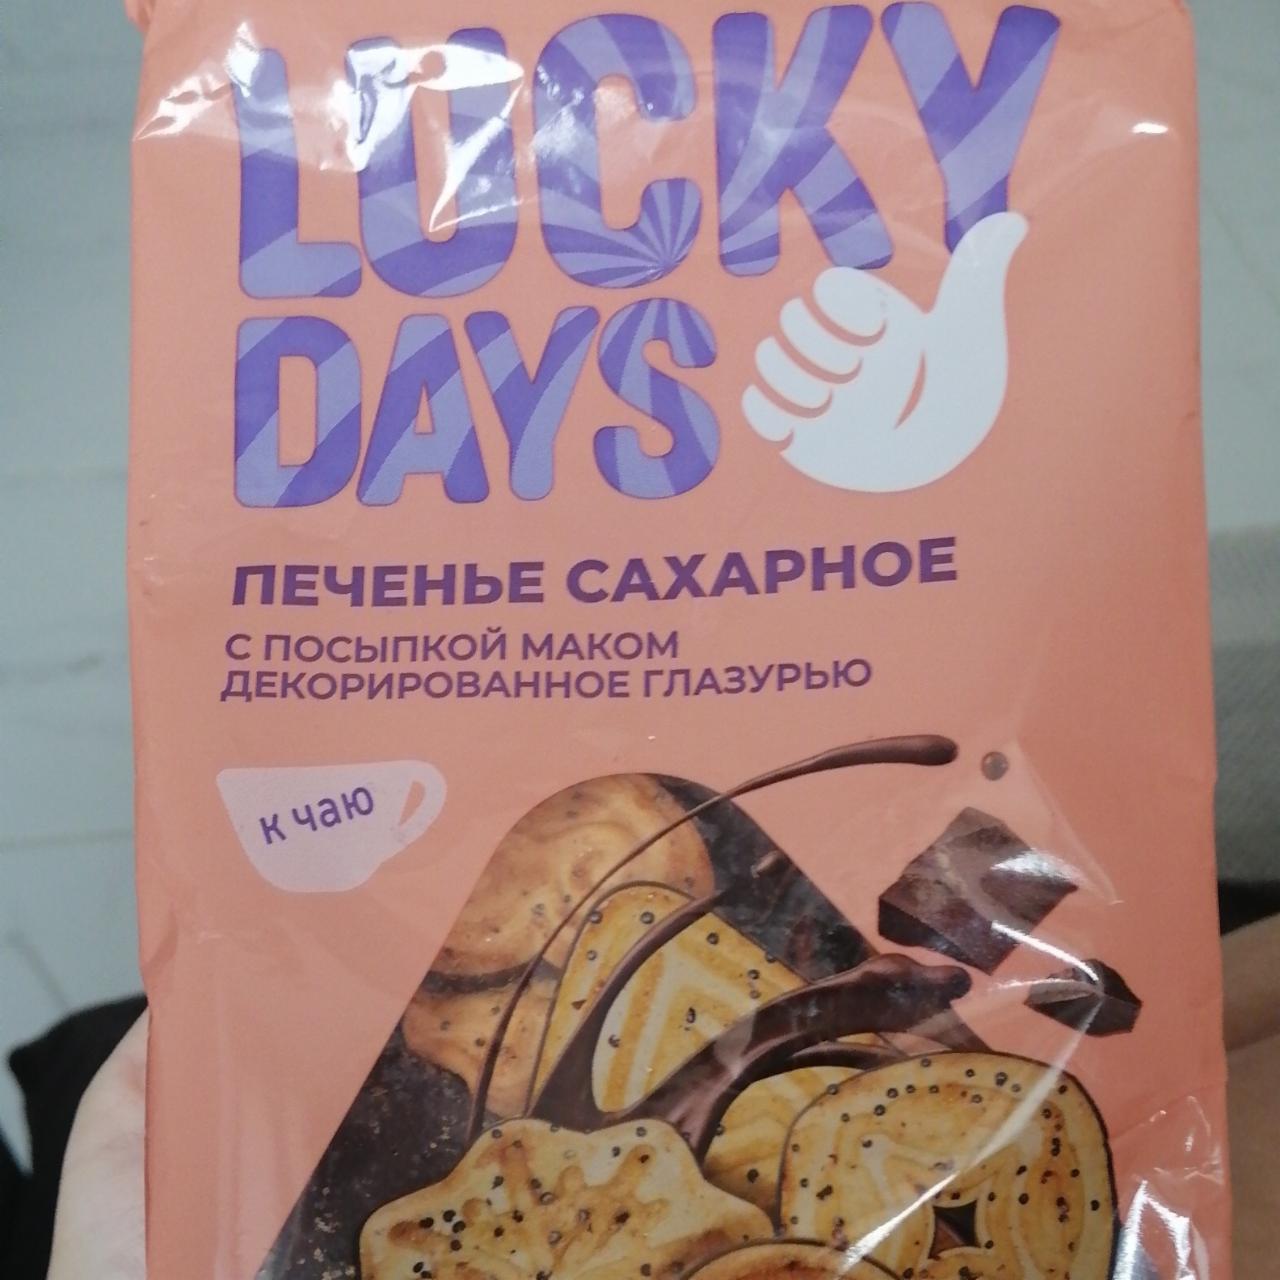 Фото - Печенье сахарное с посыпкой маком Lucky Days